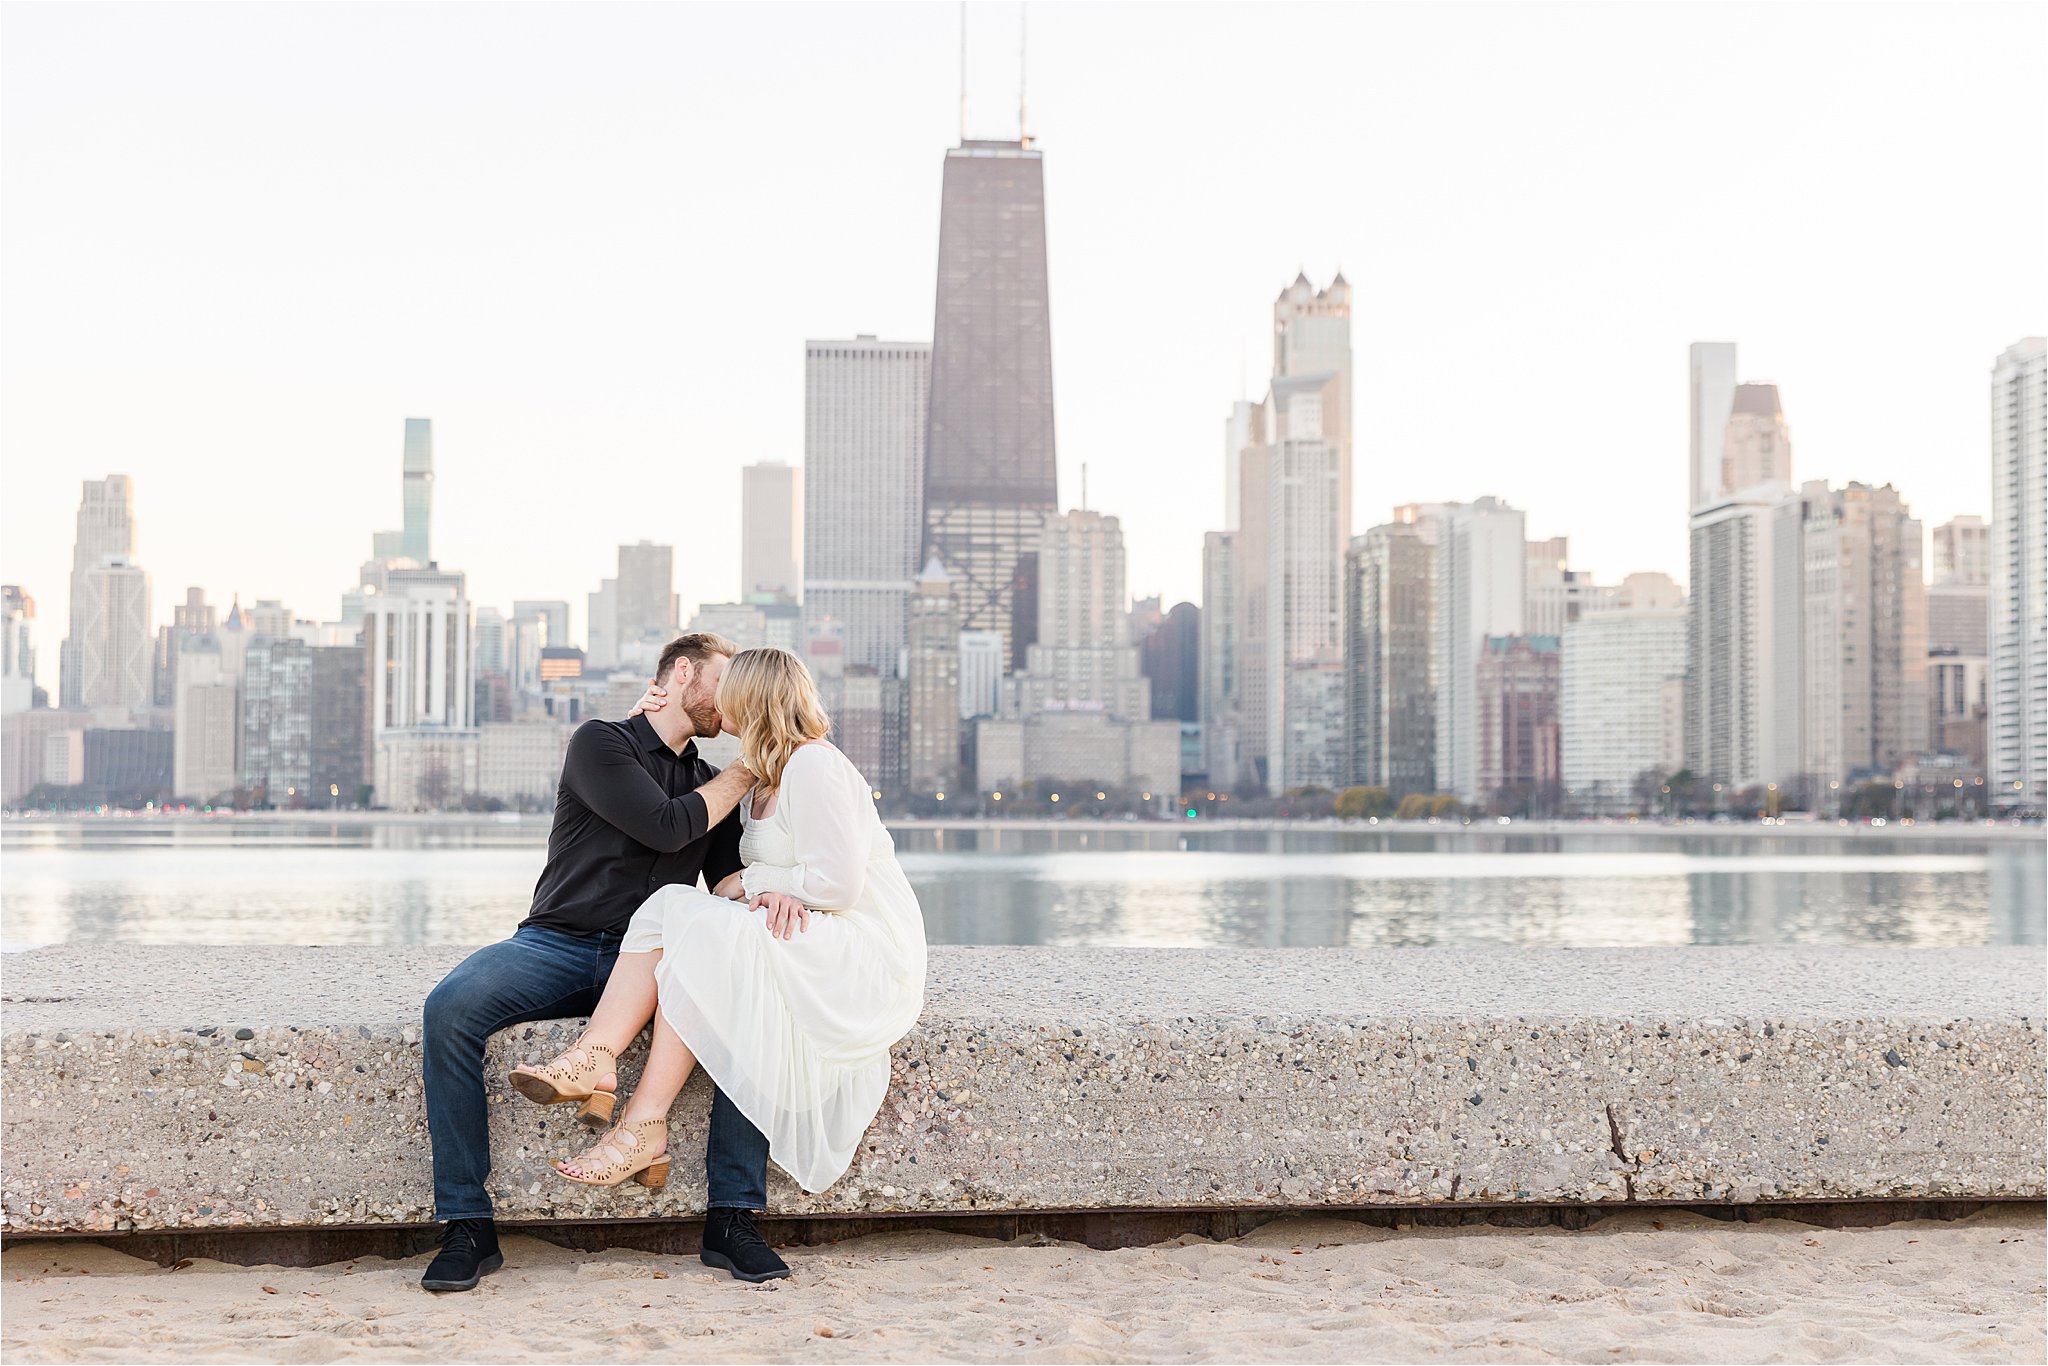 Engagement photos at North Avenue Beach in Chicago by Karen Shoufler